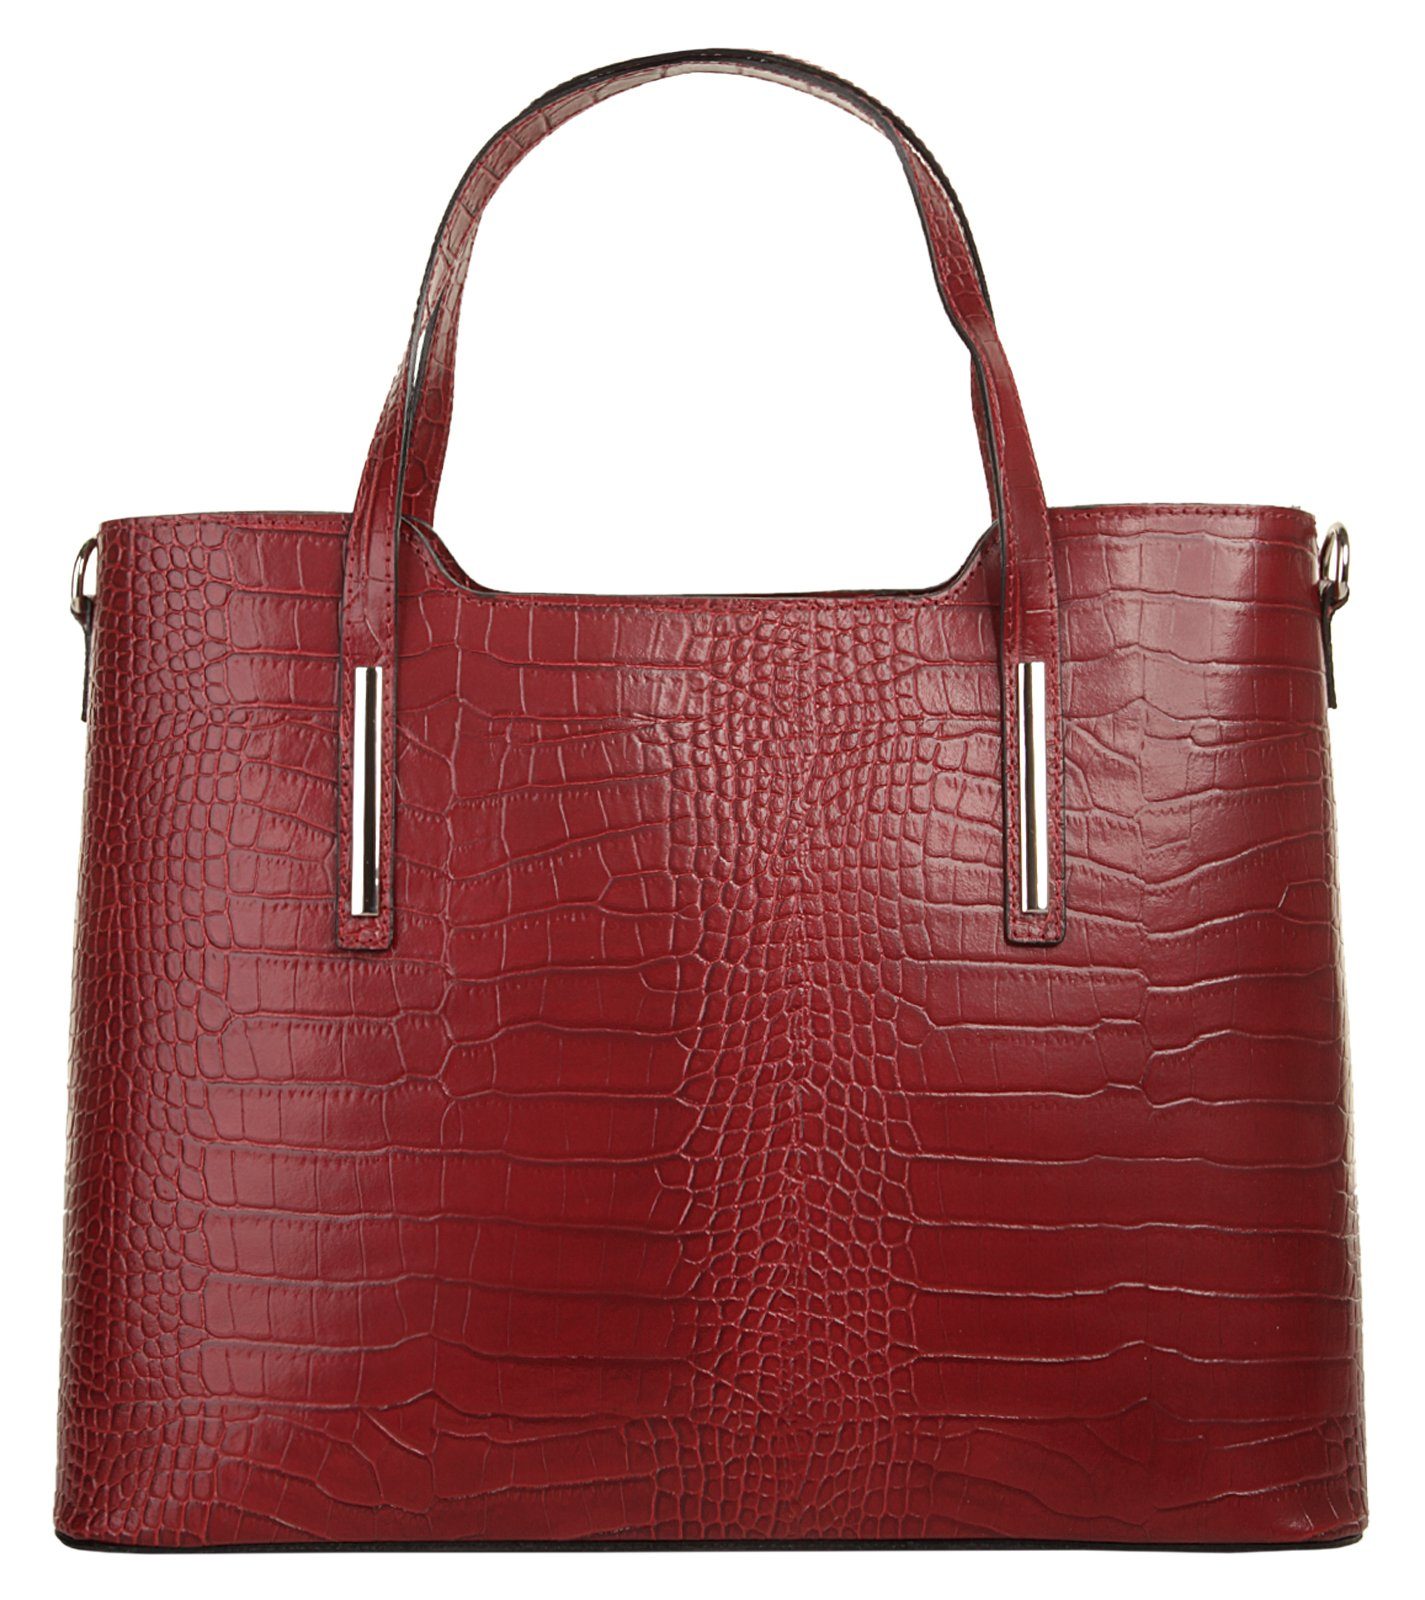 Handtasche in rot online kaufen | OTTO